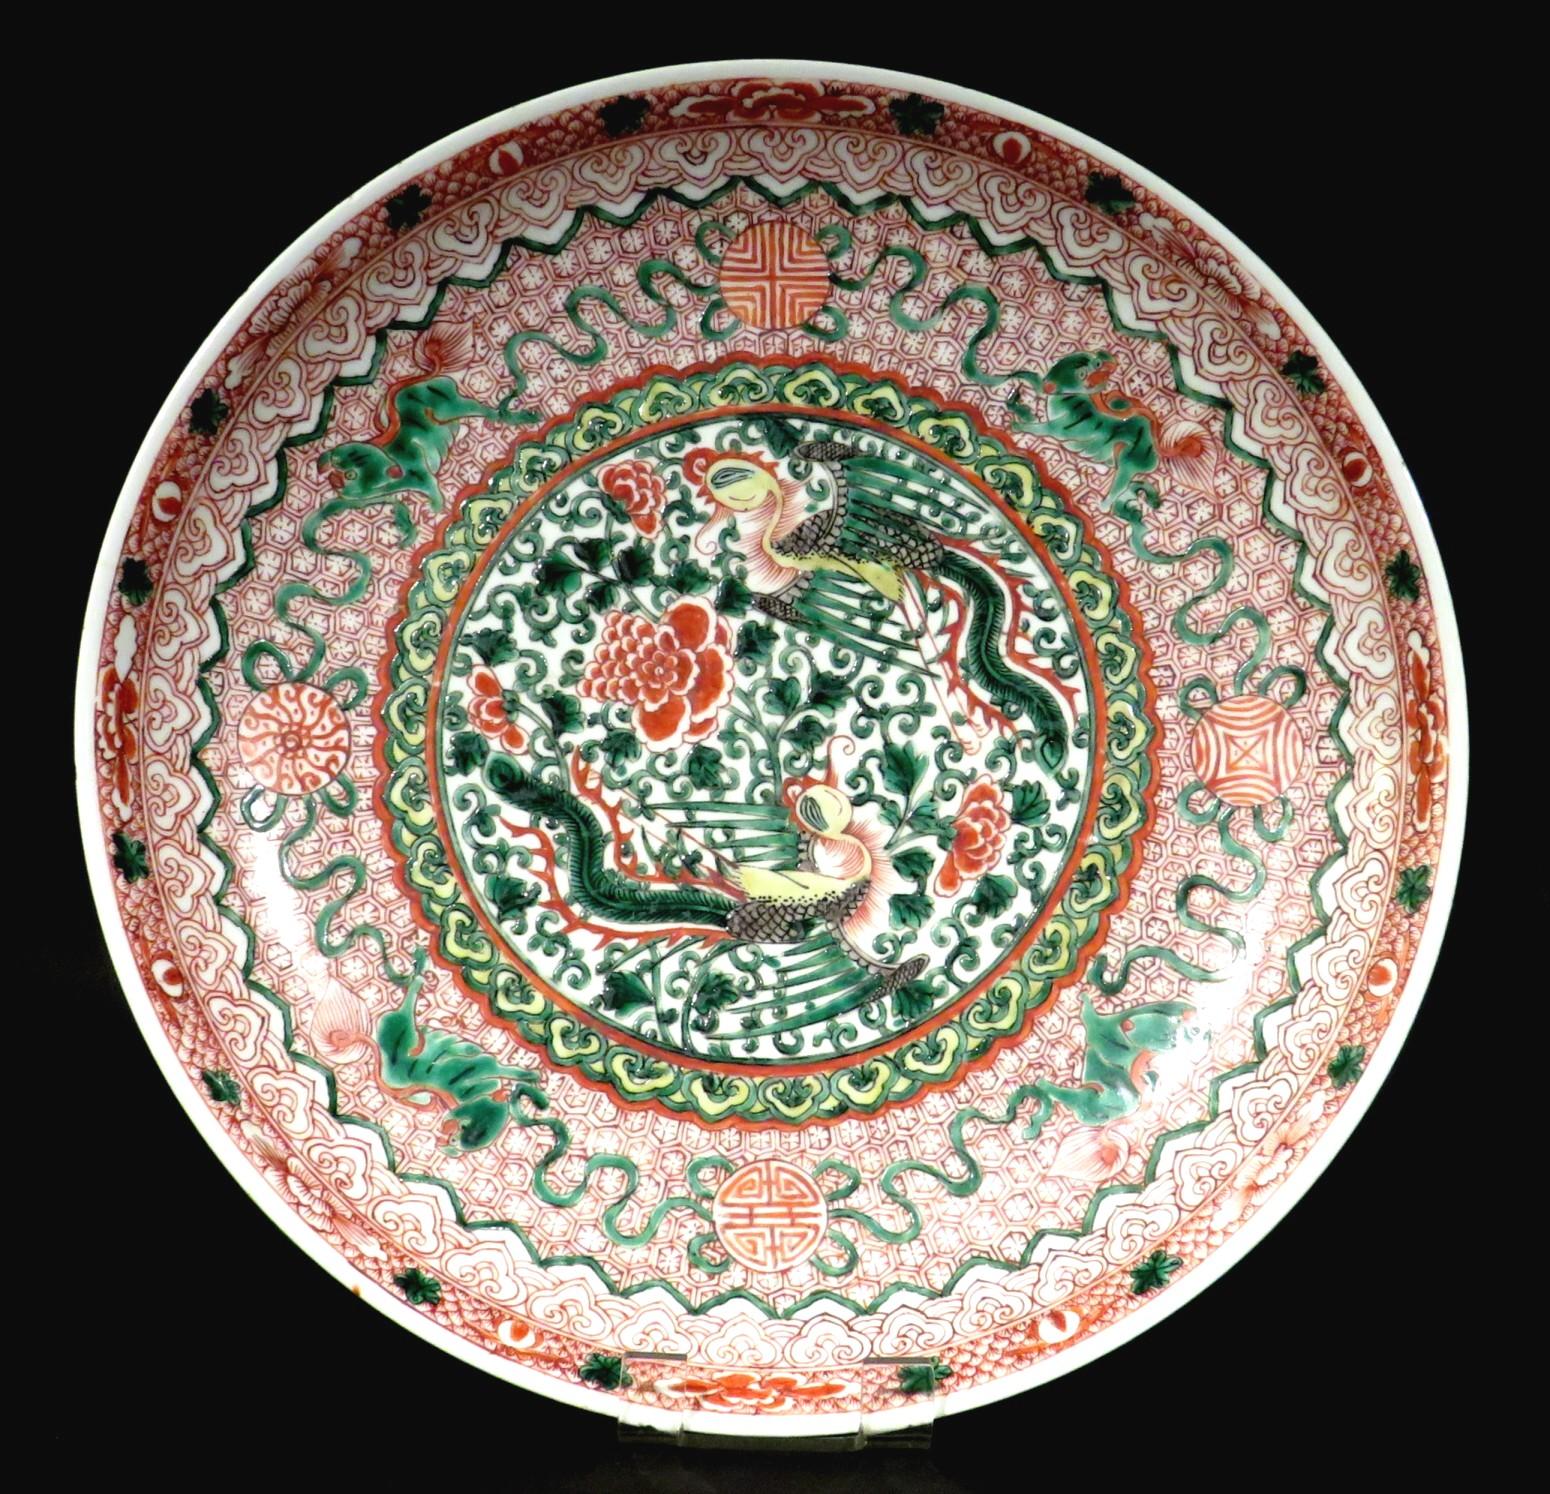 Das zentrale Feld zeigt zwei mythologische Feng-huang (Phönixe), die Chrysanthemenblüten und sich windende Ranken innerhalb eines Bandes von Ruyi-Köpfen umkreisen. Der Hohlraum erhebt sich zu einem eisenroten Grund mit sich wiederholenden